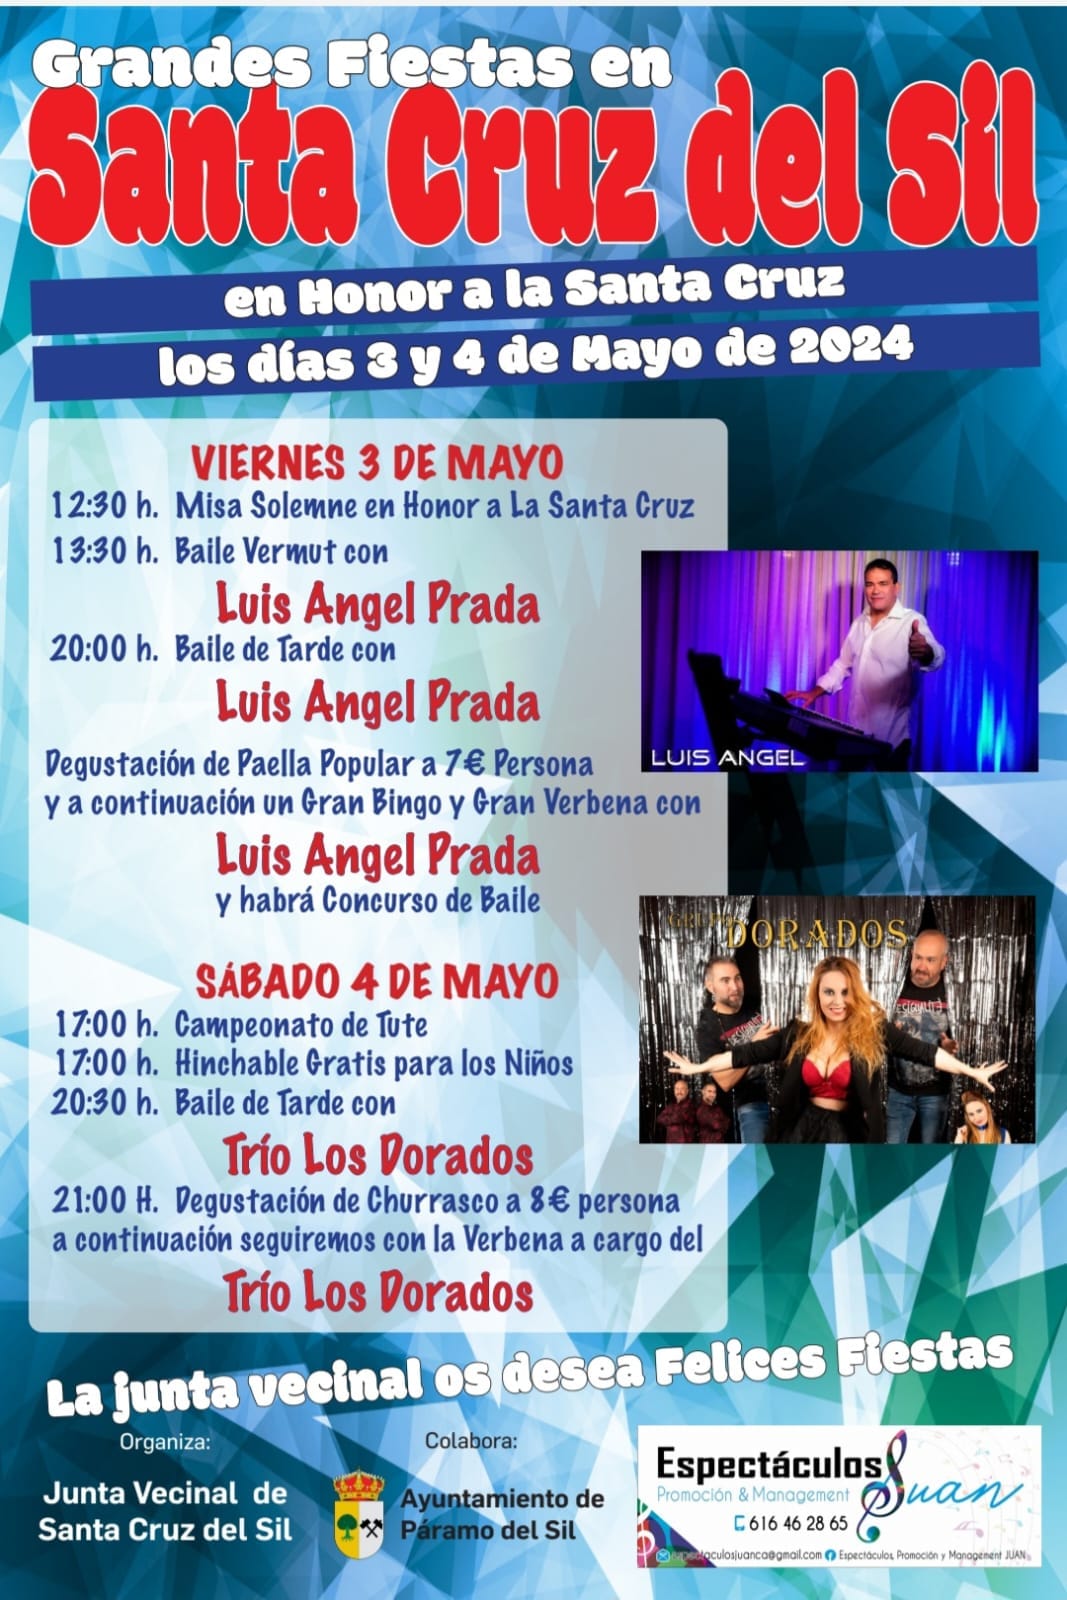 Santa Cruz del Sil anuncia sus fiestas el 3 y 4 de mayo, Paella, misa y música para disfrutar 11